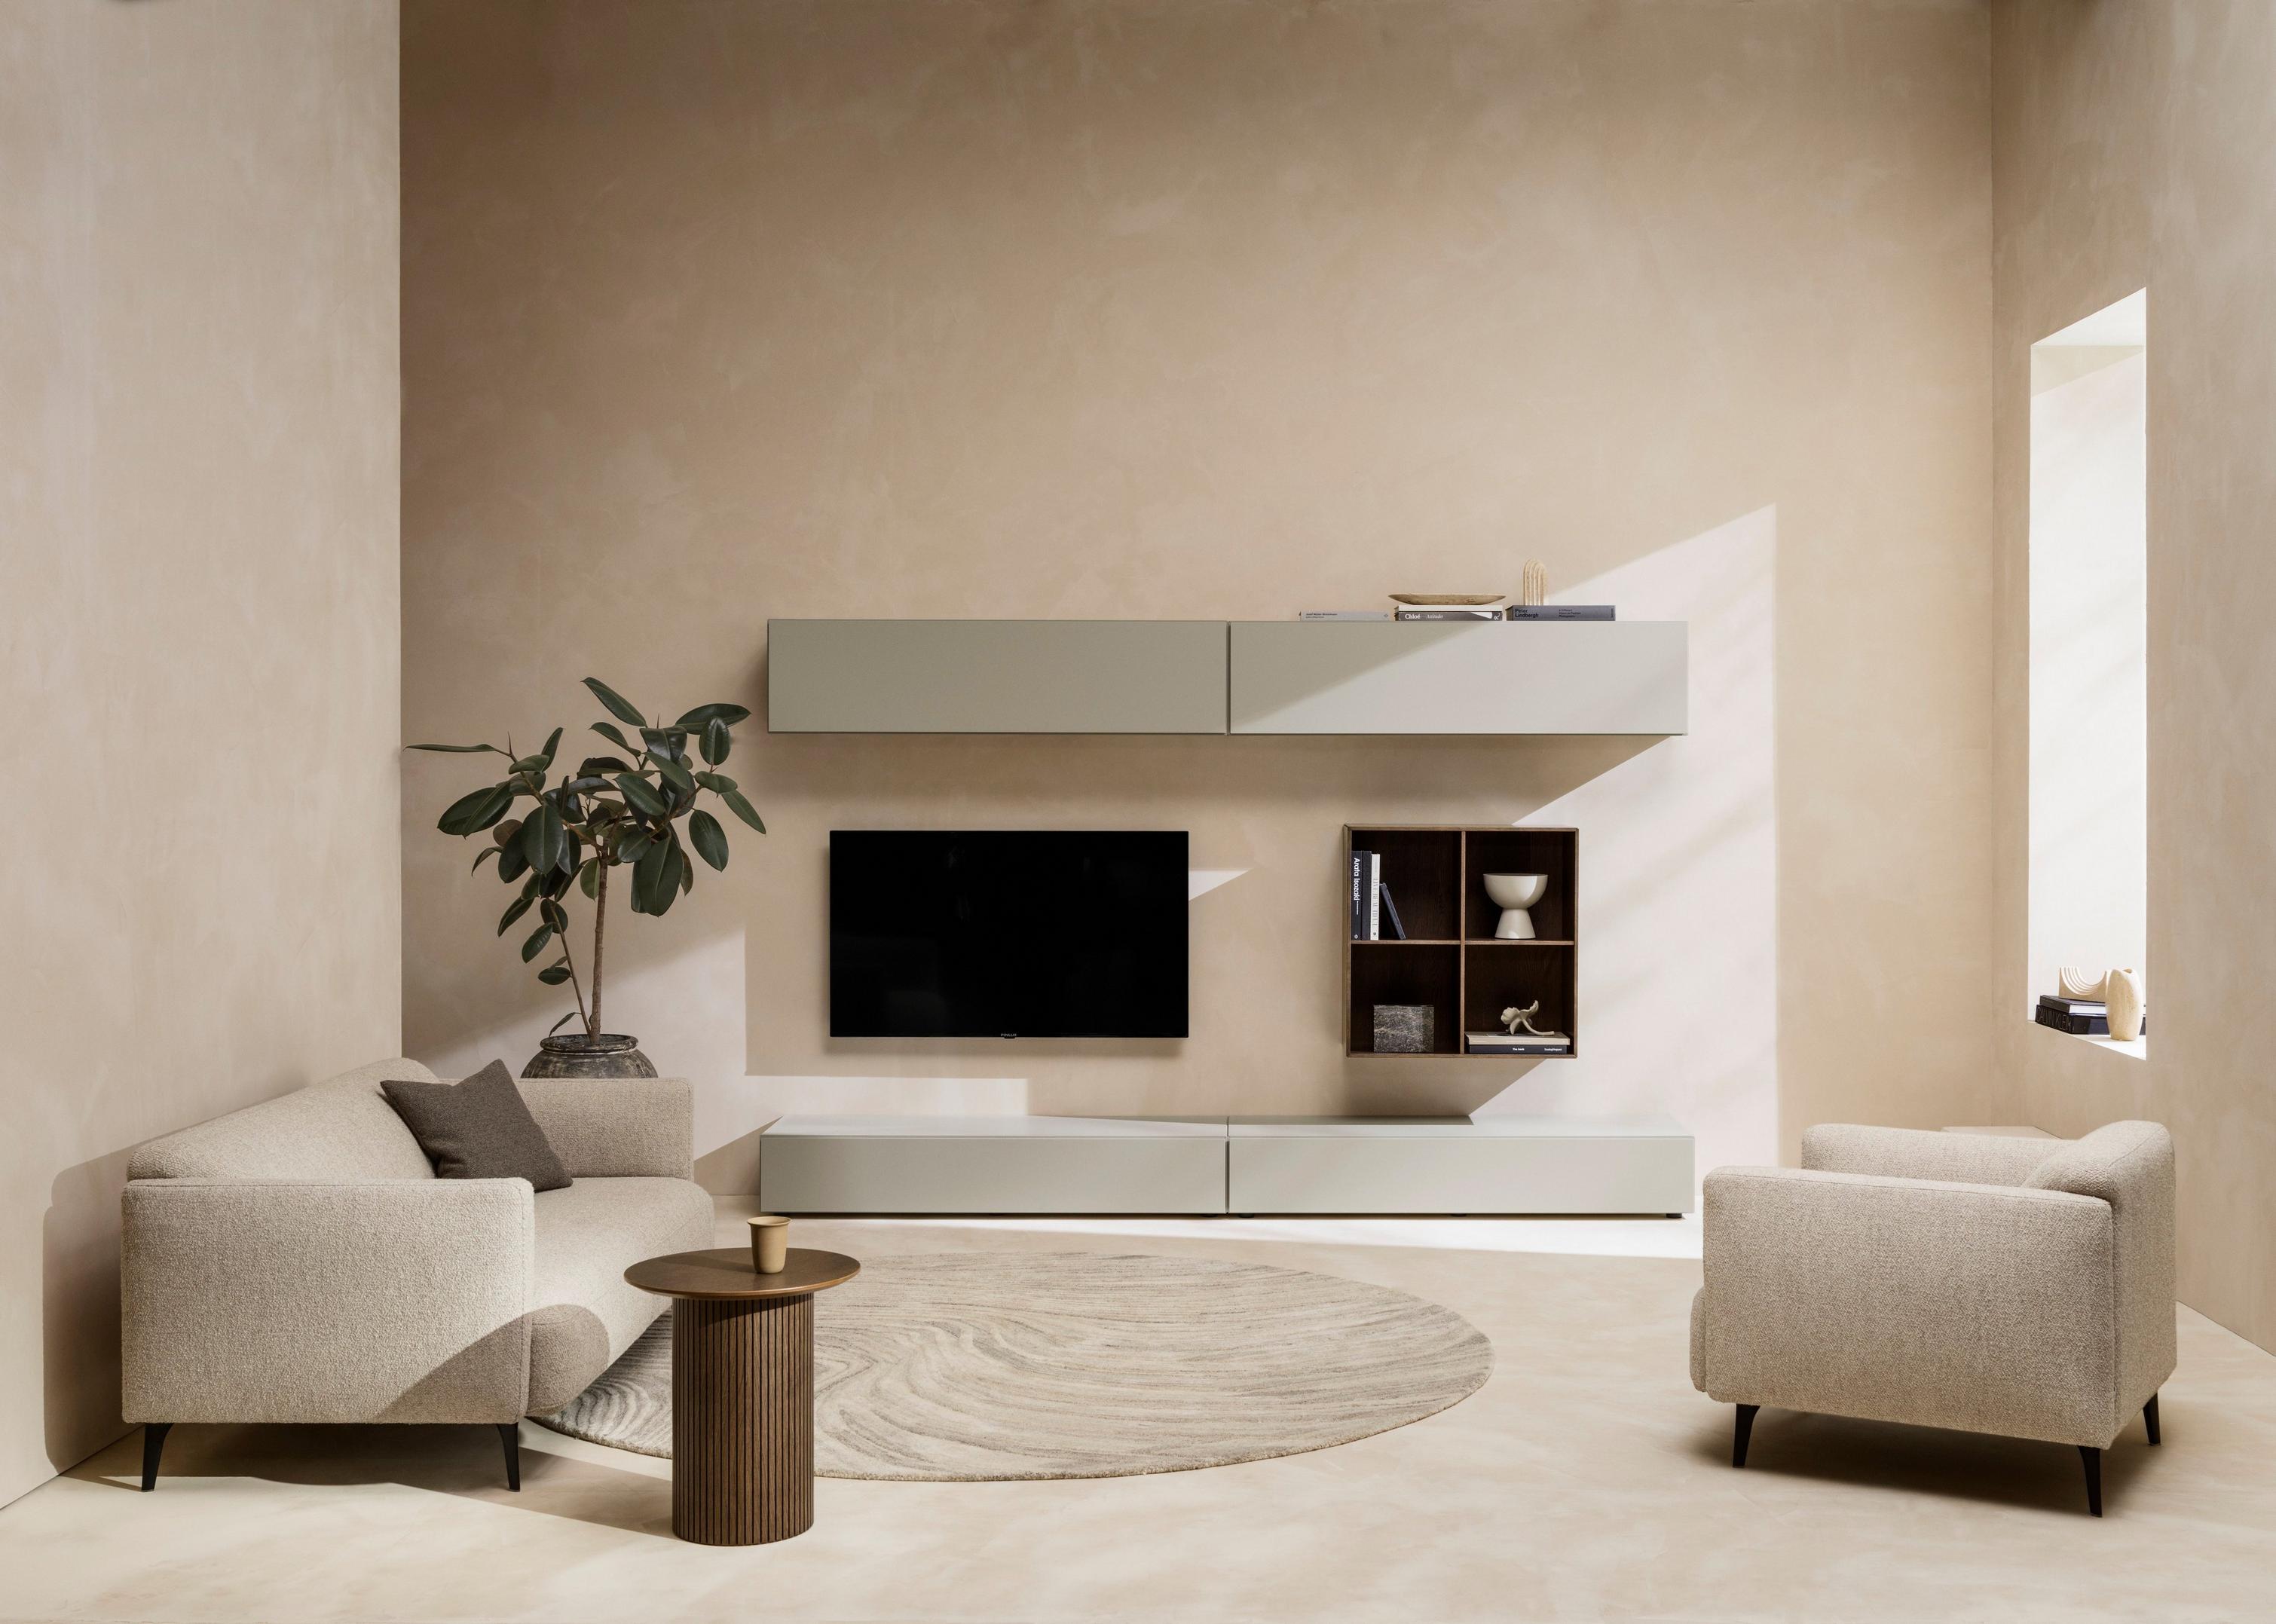 Entspannendes Wohnzimmer in einer neutralen Farbpalette mit rundem Santiago Couchtisch.